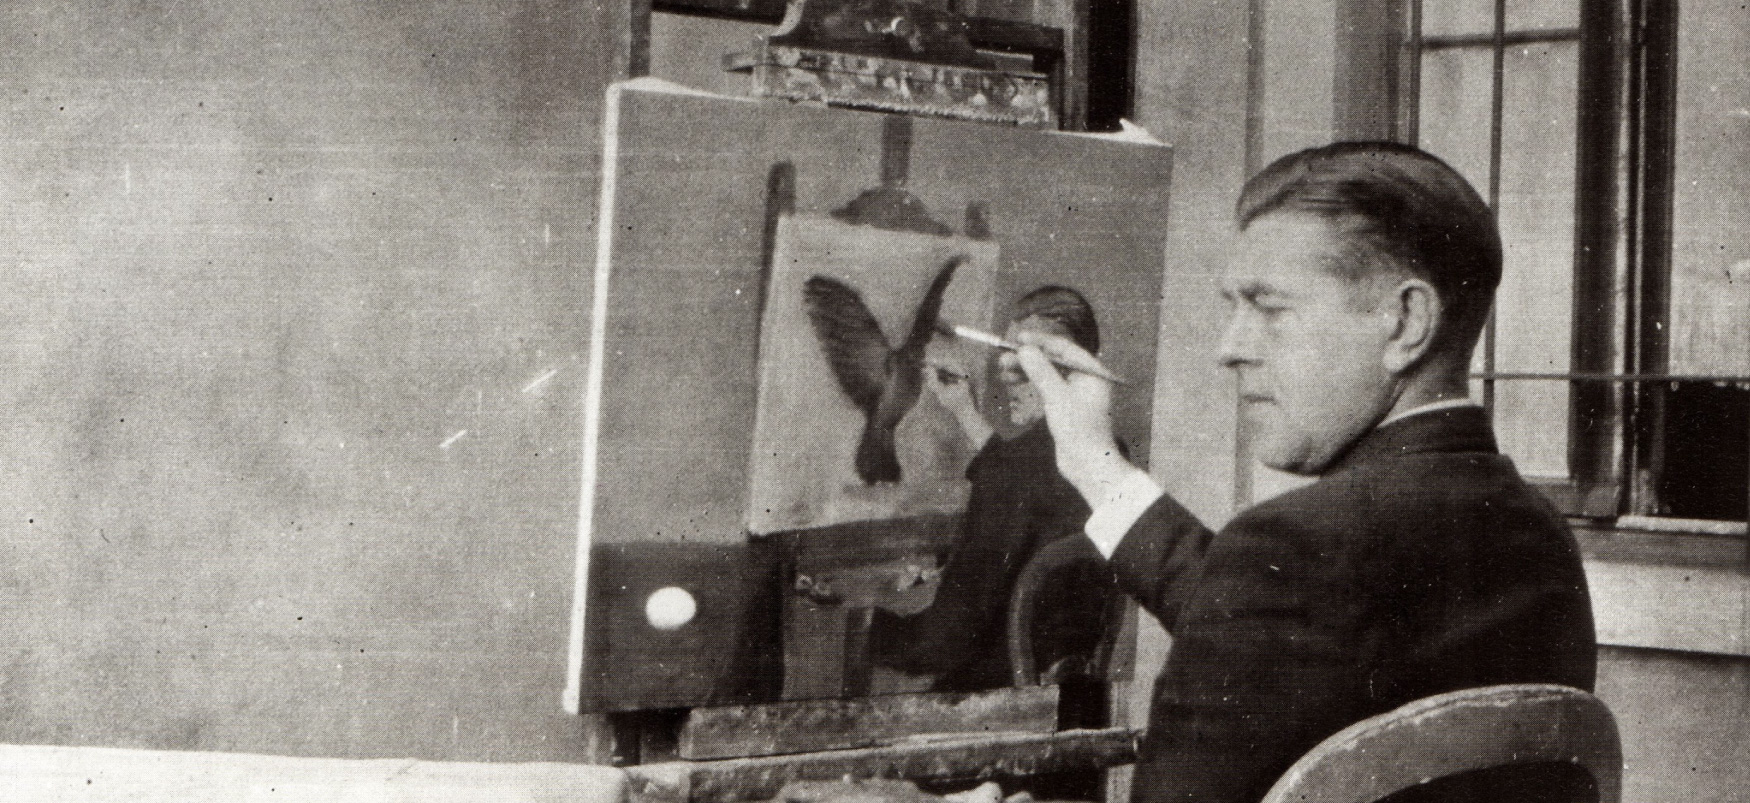 Photographie en noir et blanc d'un homme assis tenant un pinceau sur une toile presque terminée posée sur un chevalet.